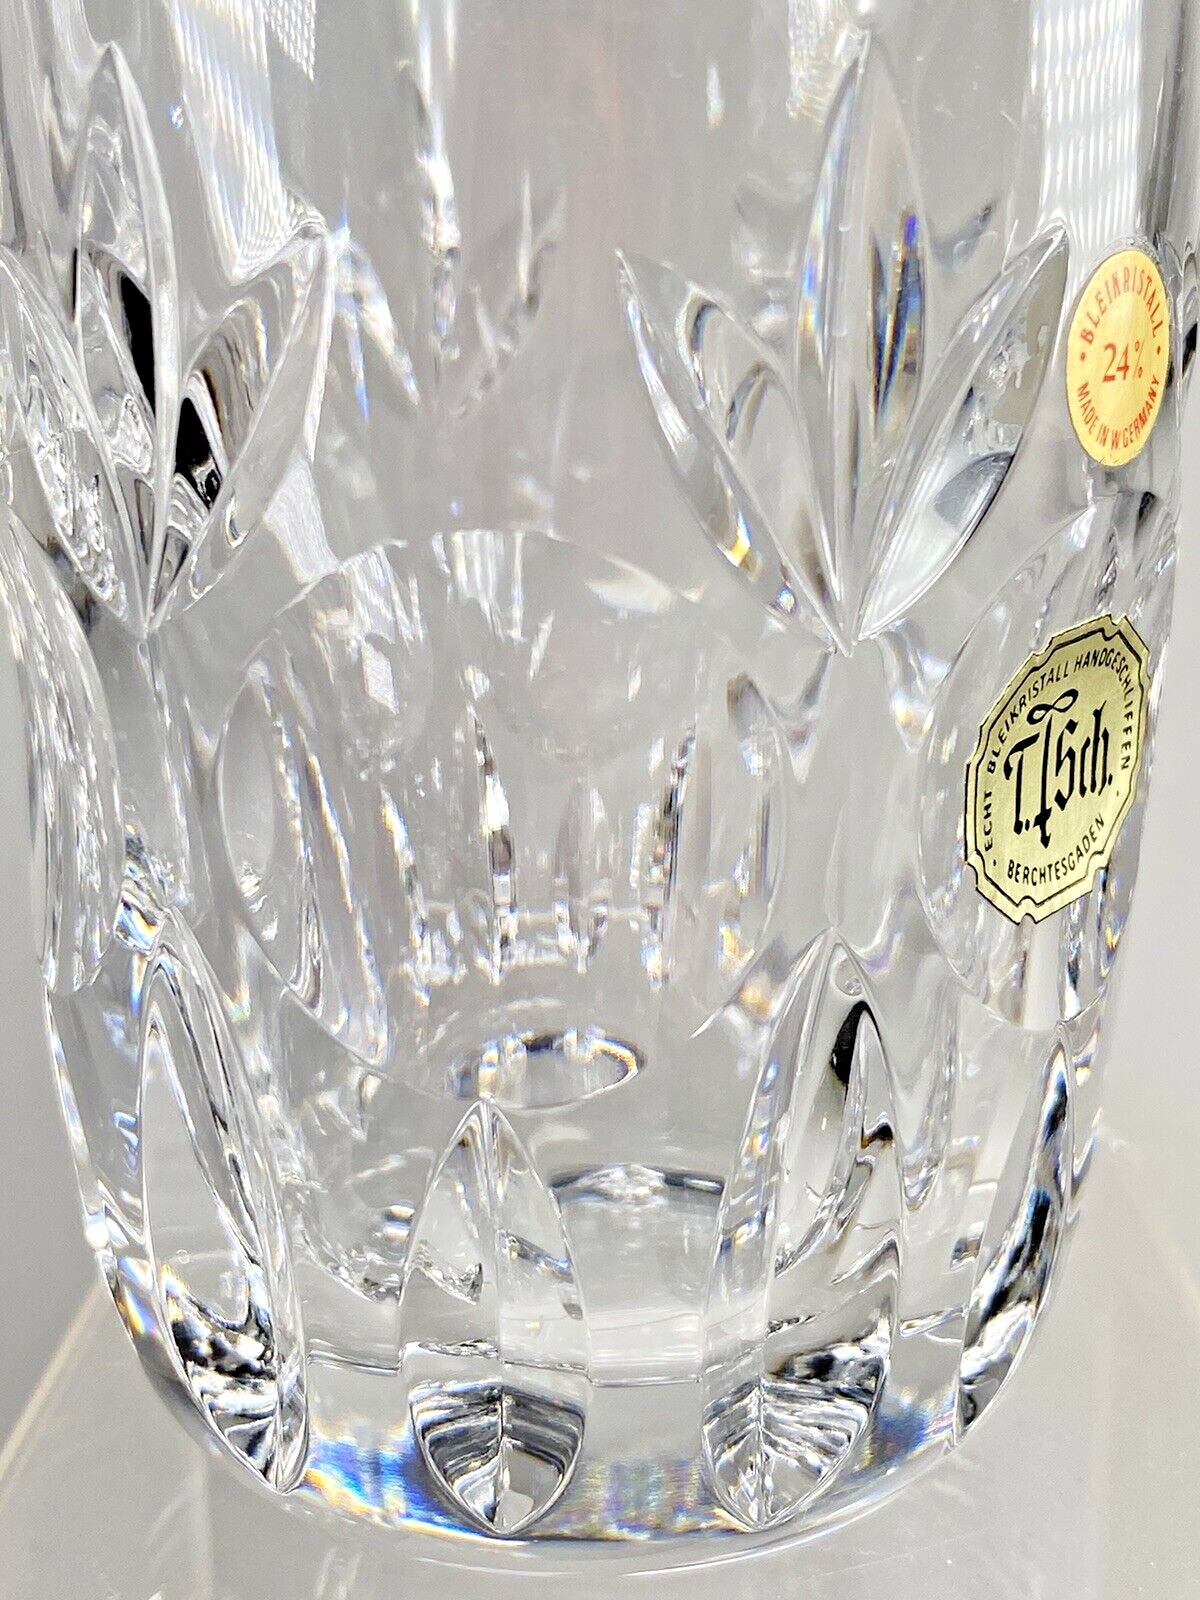 Echt Bleikristall Handgeschliffen Berchtegaden Tisch Crystal Glasses Set of  Six | eBay